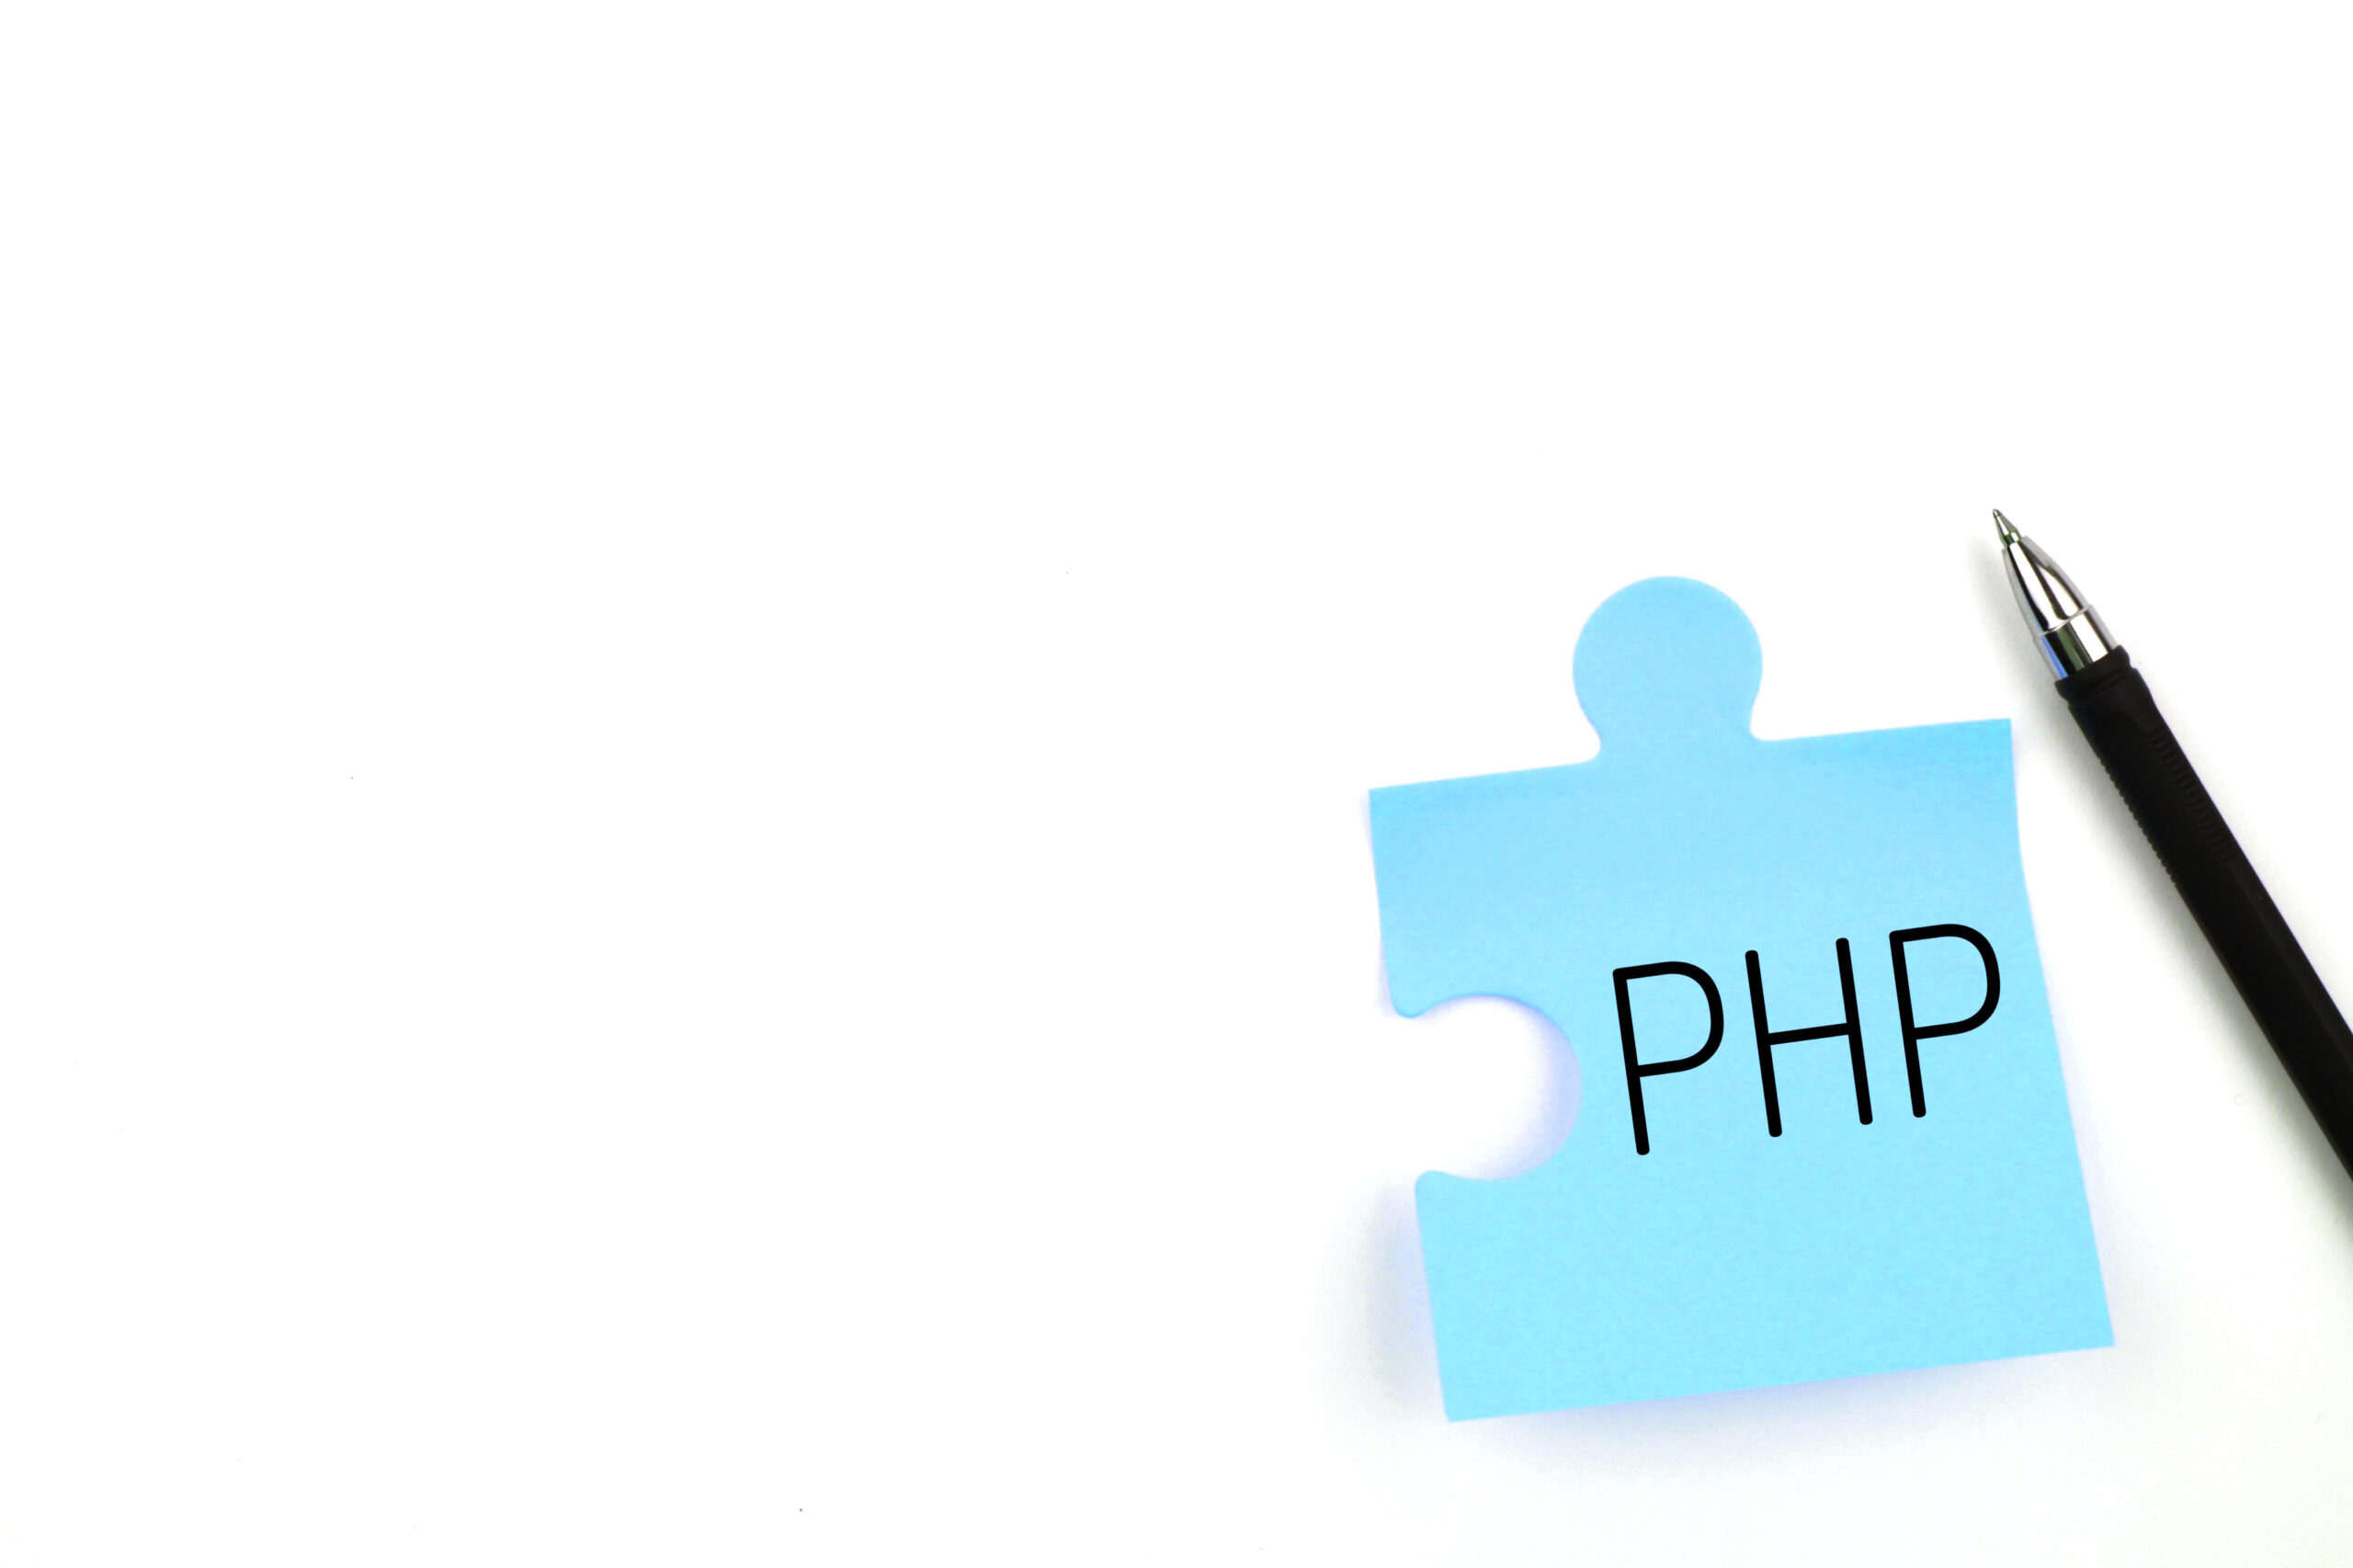 Przegląd frameworków PHP: Wybór odpowiedniego dla Twojego projektu - obraz wyróżniając wpis blogowy